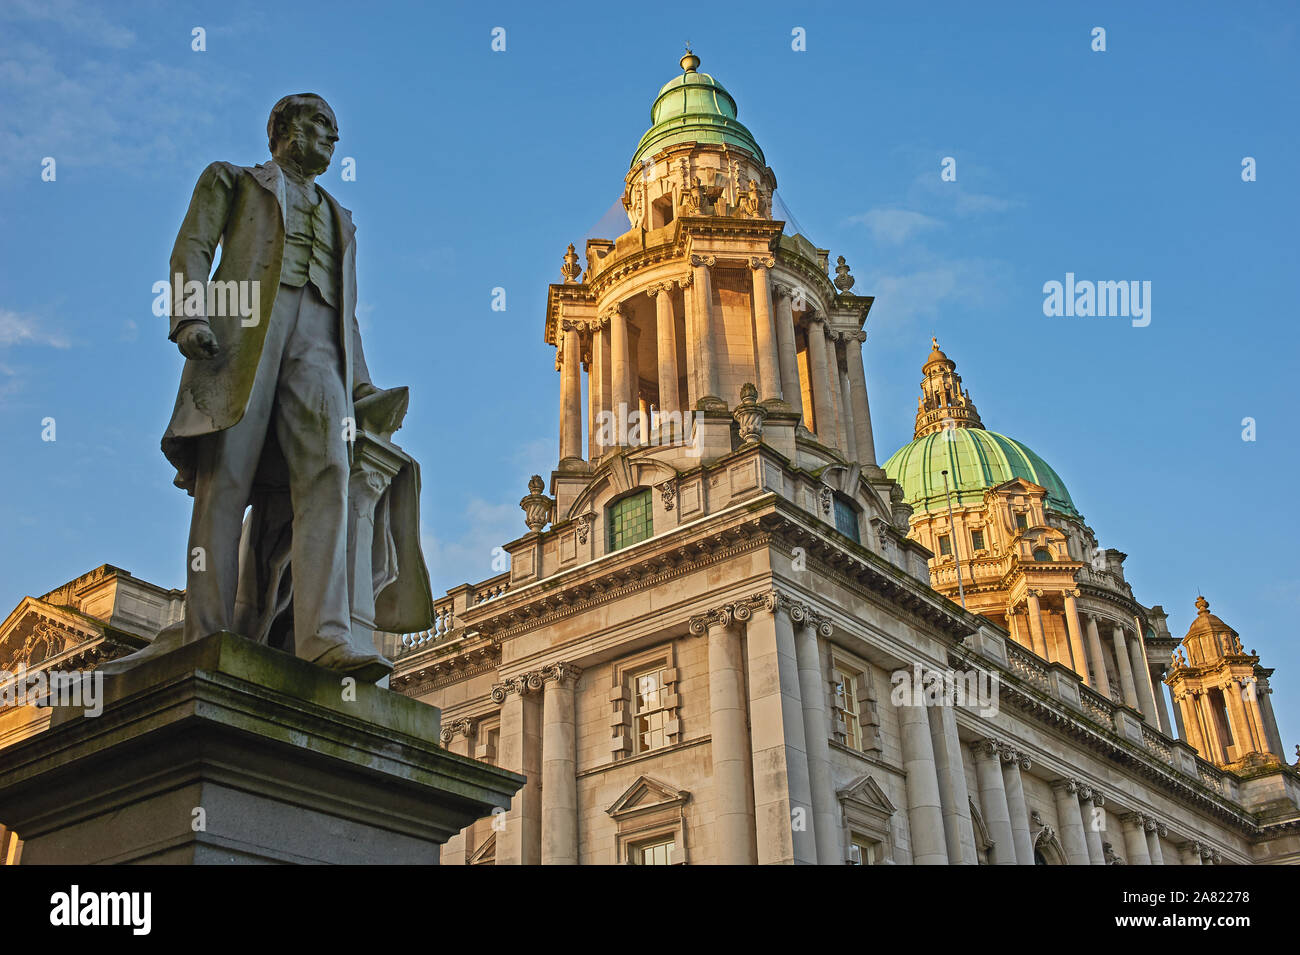 La estatua de James Harland, MP para Belfast Norzh, y una parte del astillero Harland y Woolf, está fuera del Ayuntamiento en el centro de Belfast Foto de stock